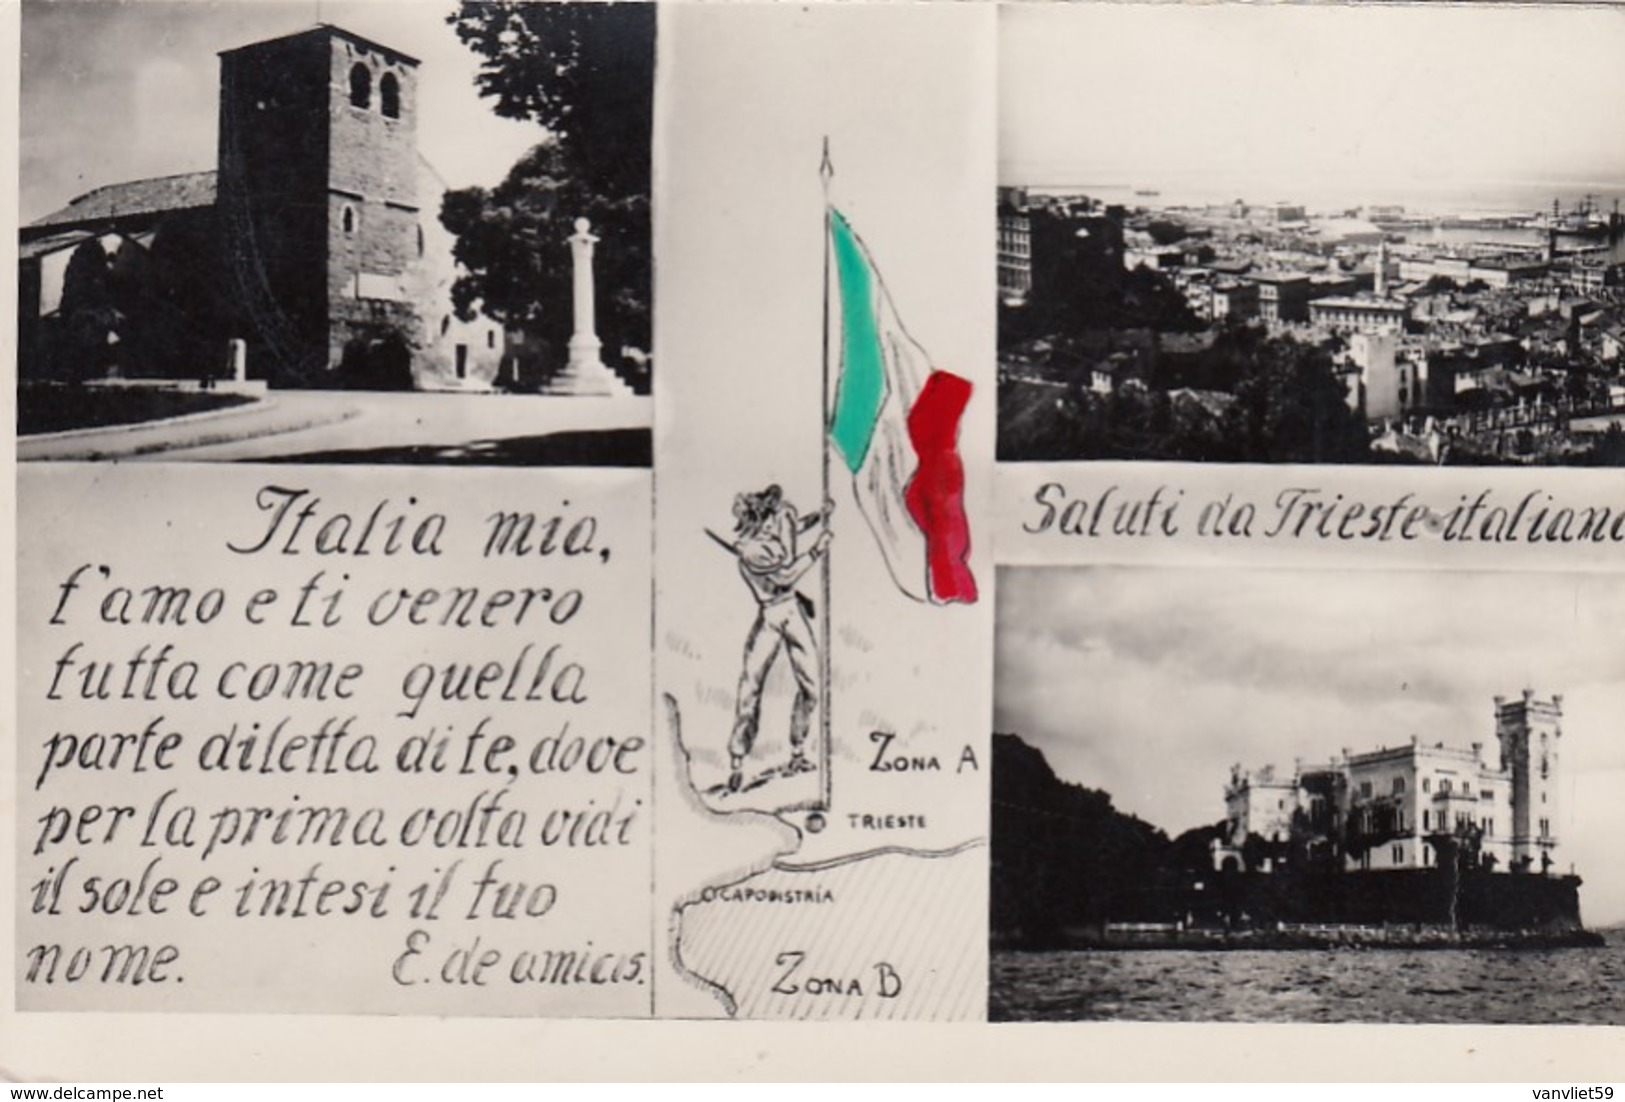 TRIESTE-SALUTI DA TRIESTE ITALIANA-3 IMMAGINI-CARTOLINA VERA FOTOGRAFIA-NON VIAGGIATA-ANNO 155-1960 - Trieste